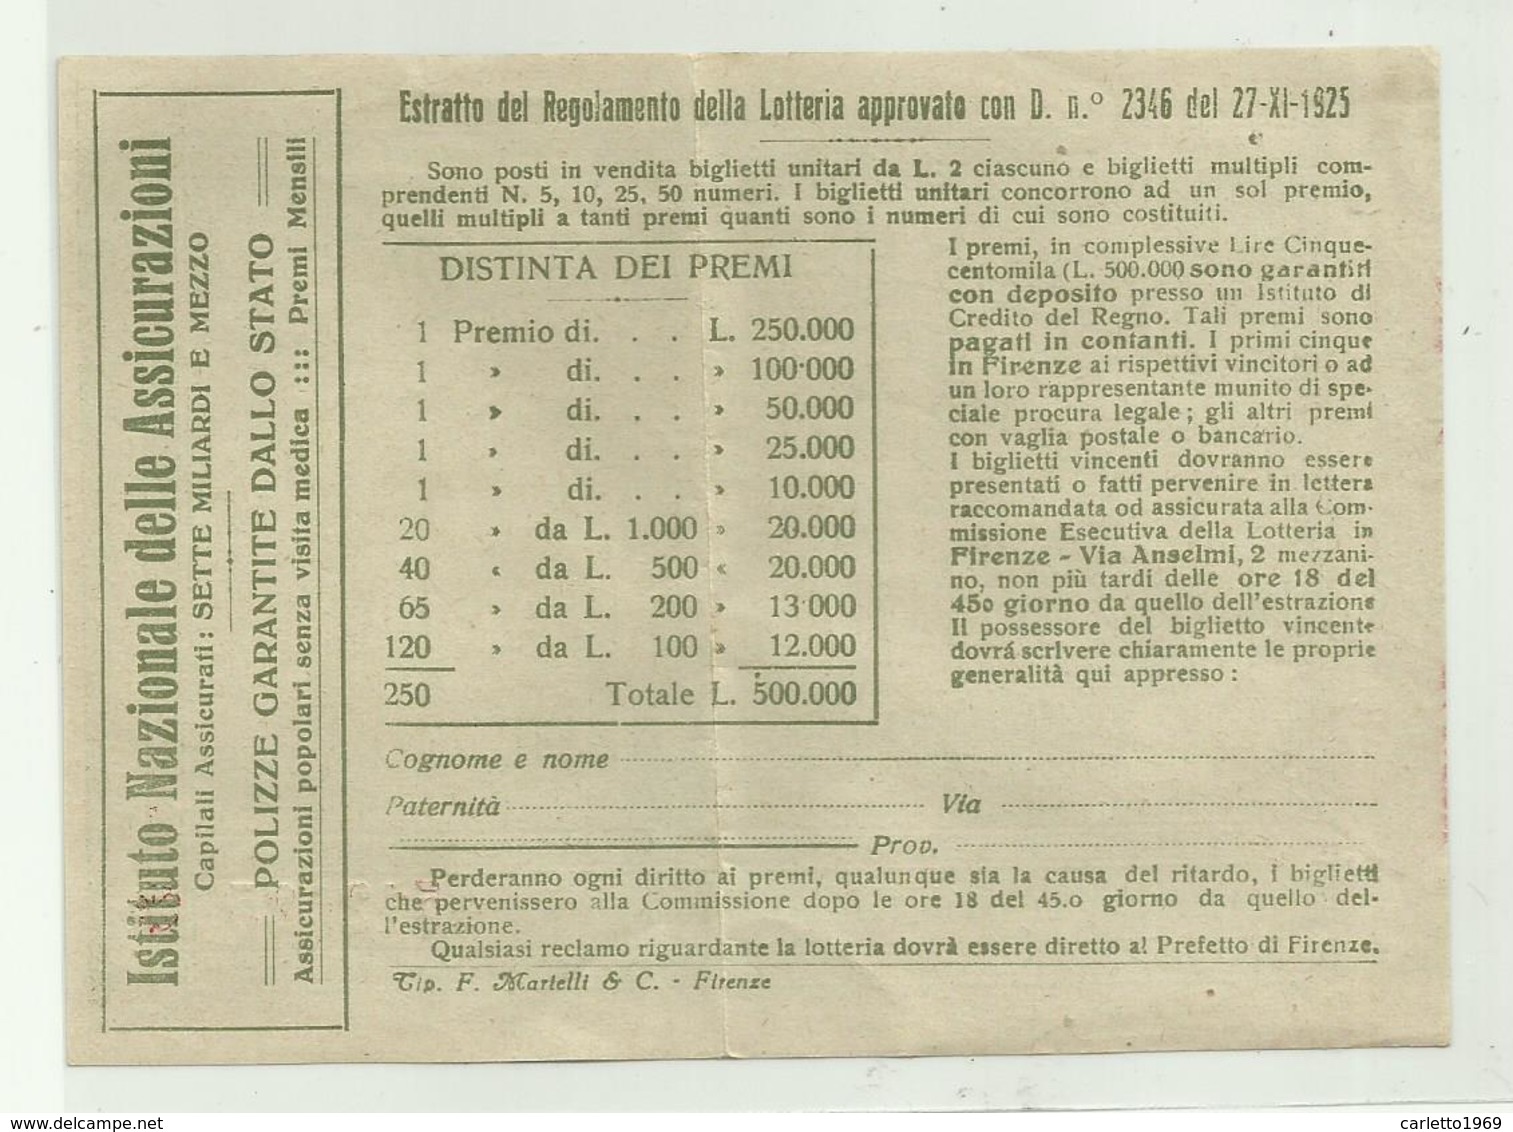 LOTTERIA NAZIONALE PRO UNIONE ITALIANA DEI CIECHI, LIRE DUE, ESTRAZIONE FIRENZE 19 MAGGIO 1927 - Billets De Loterie